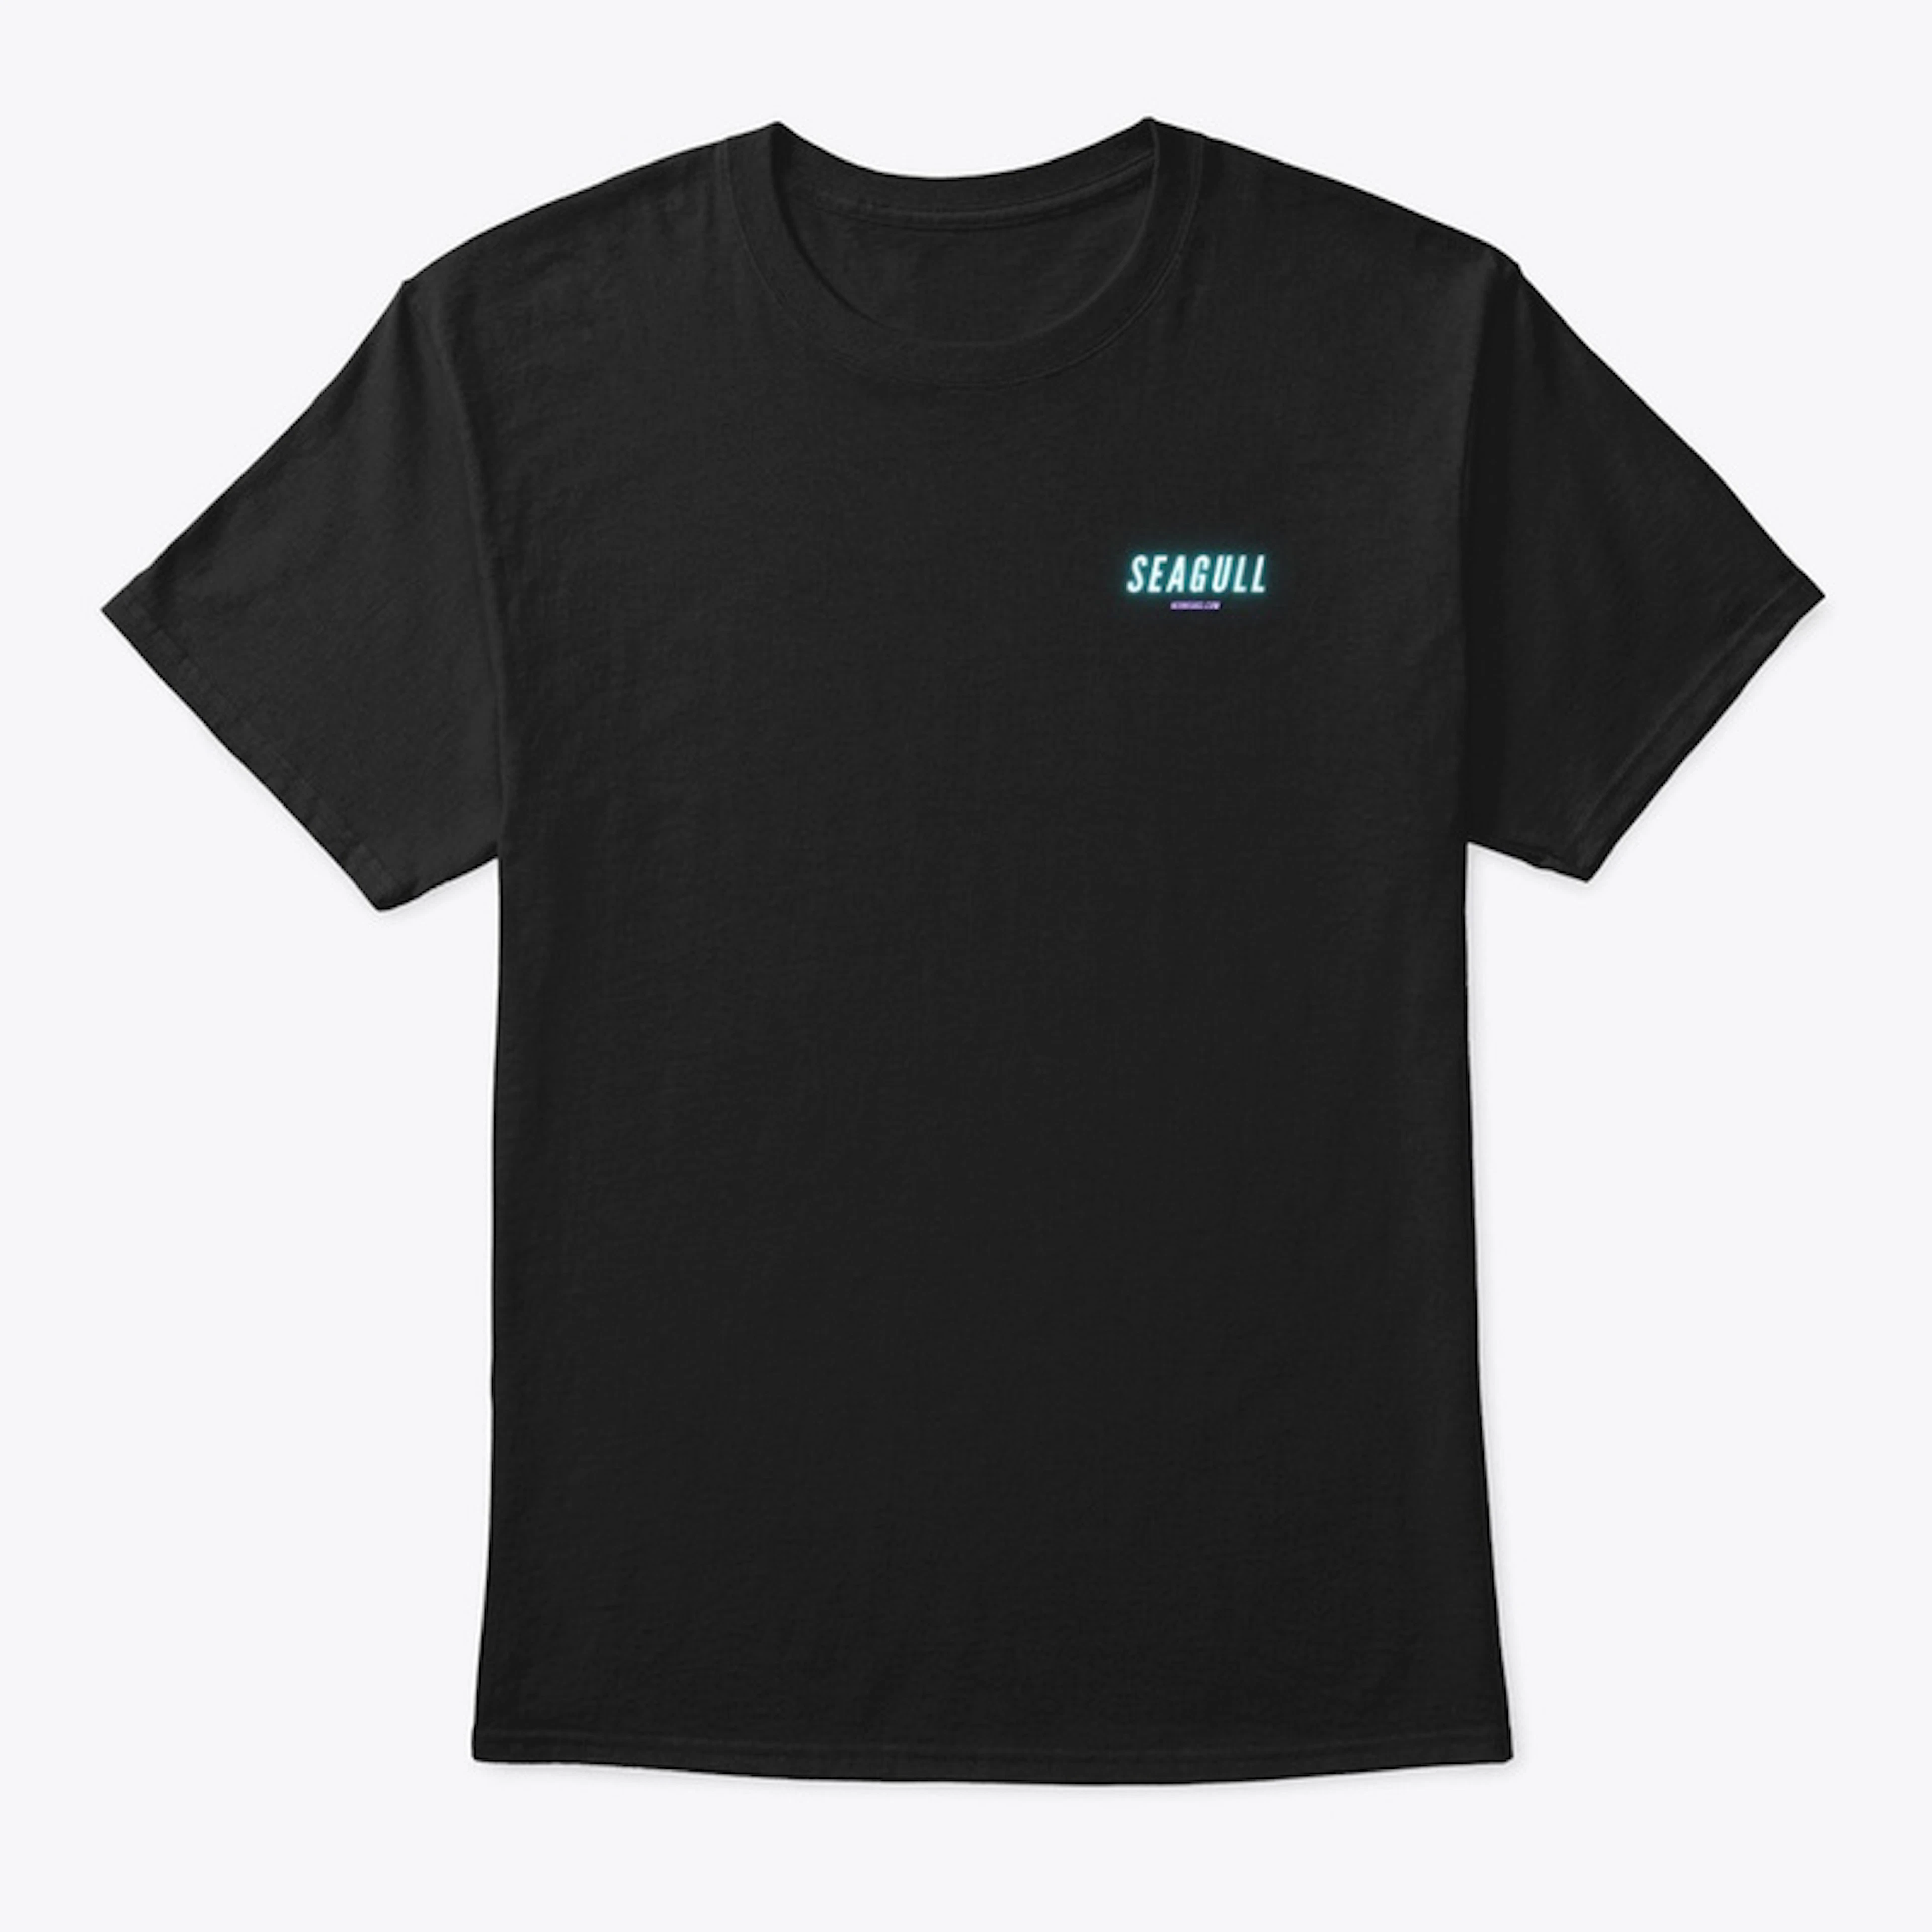 Seagull T-shirt Design